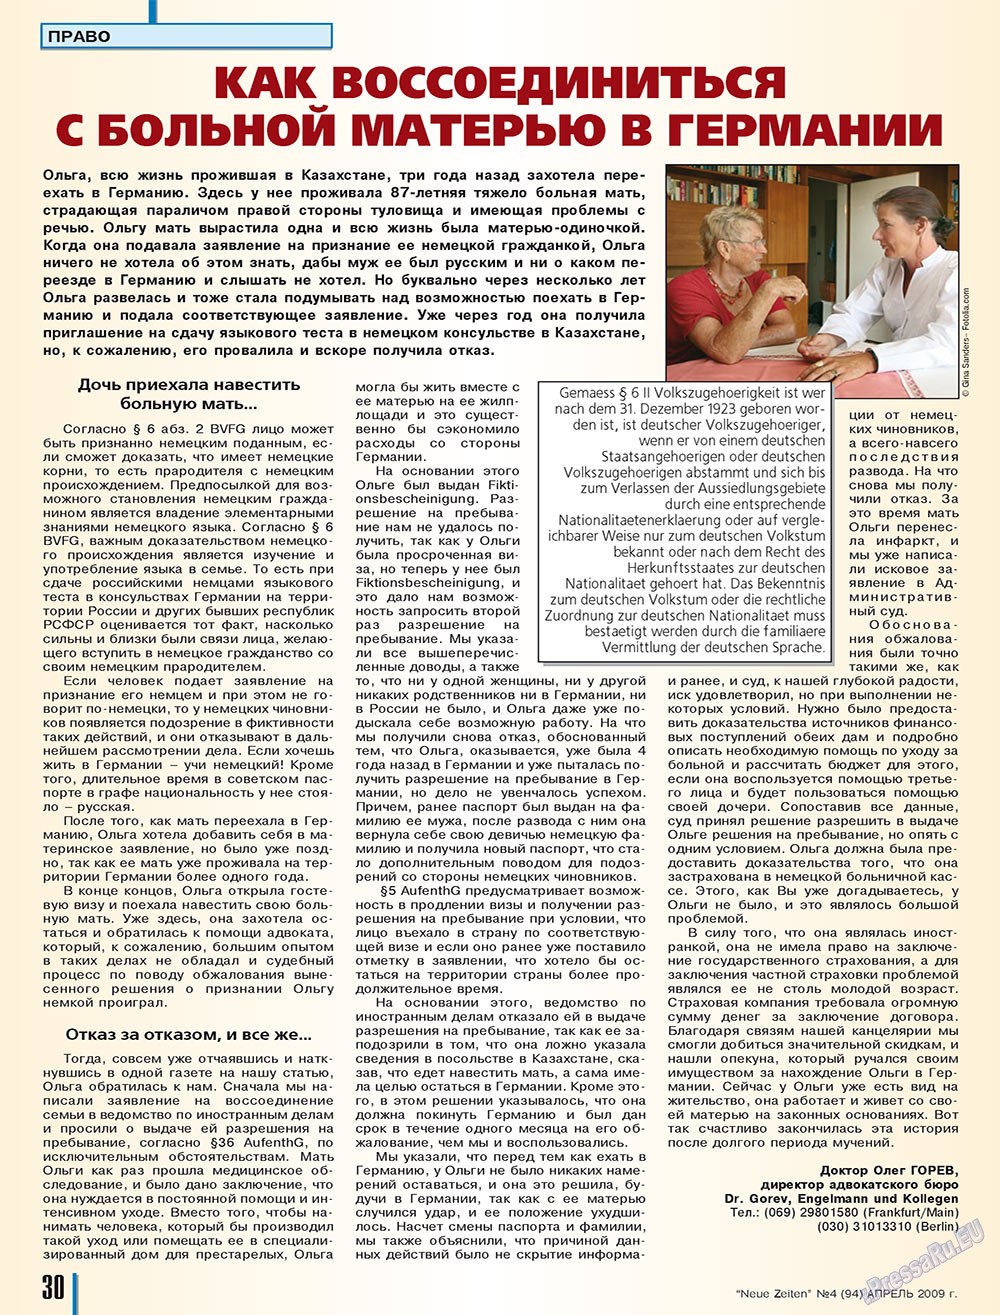 Neue Zeiten, журнал. 2009 №4 стр.30